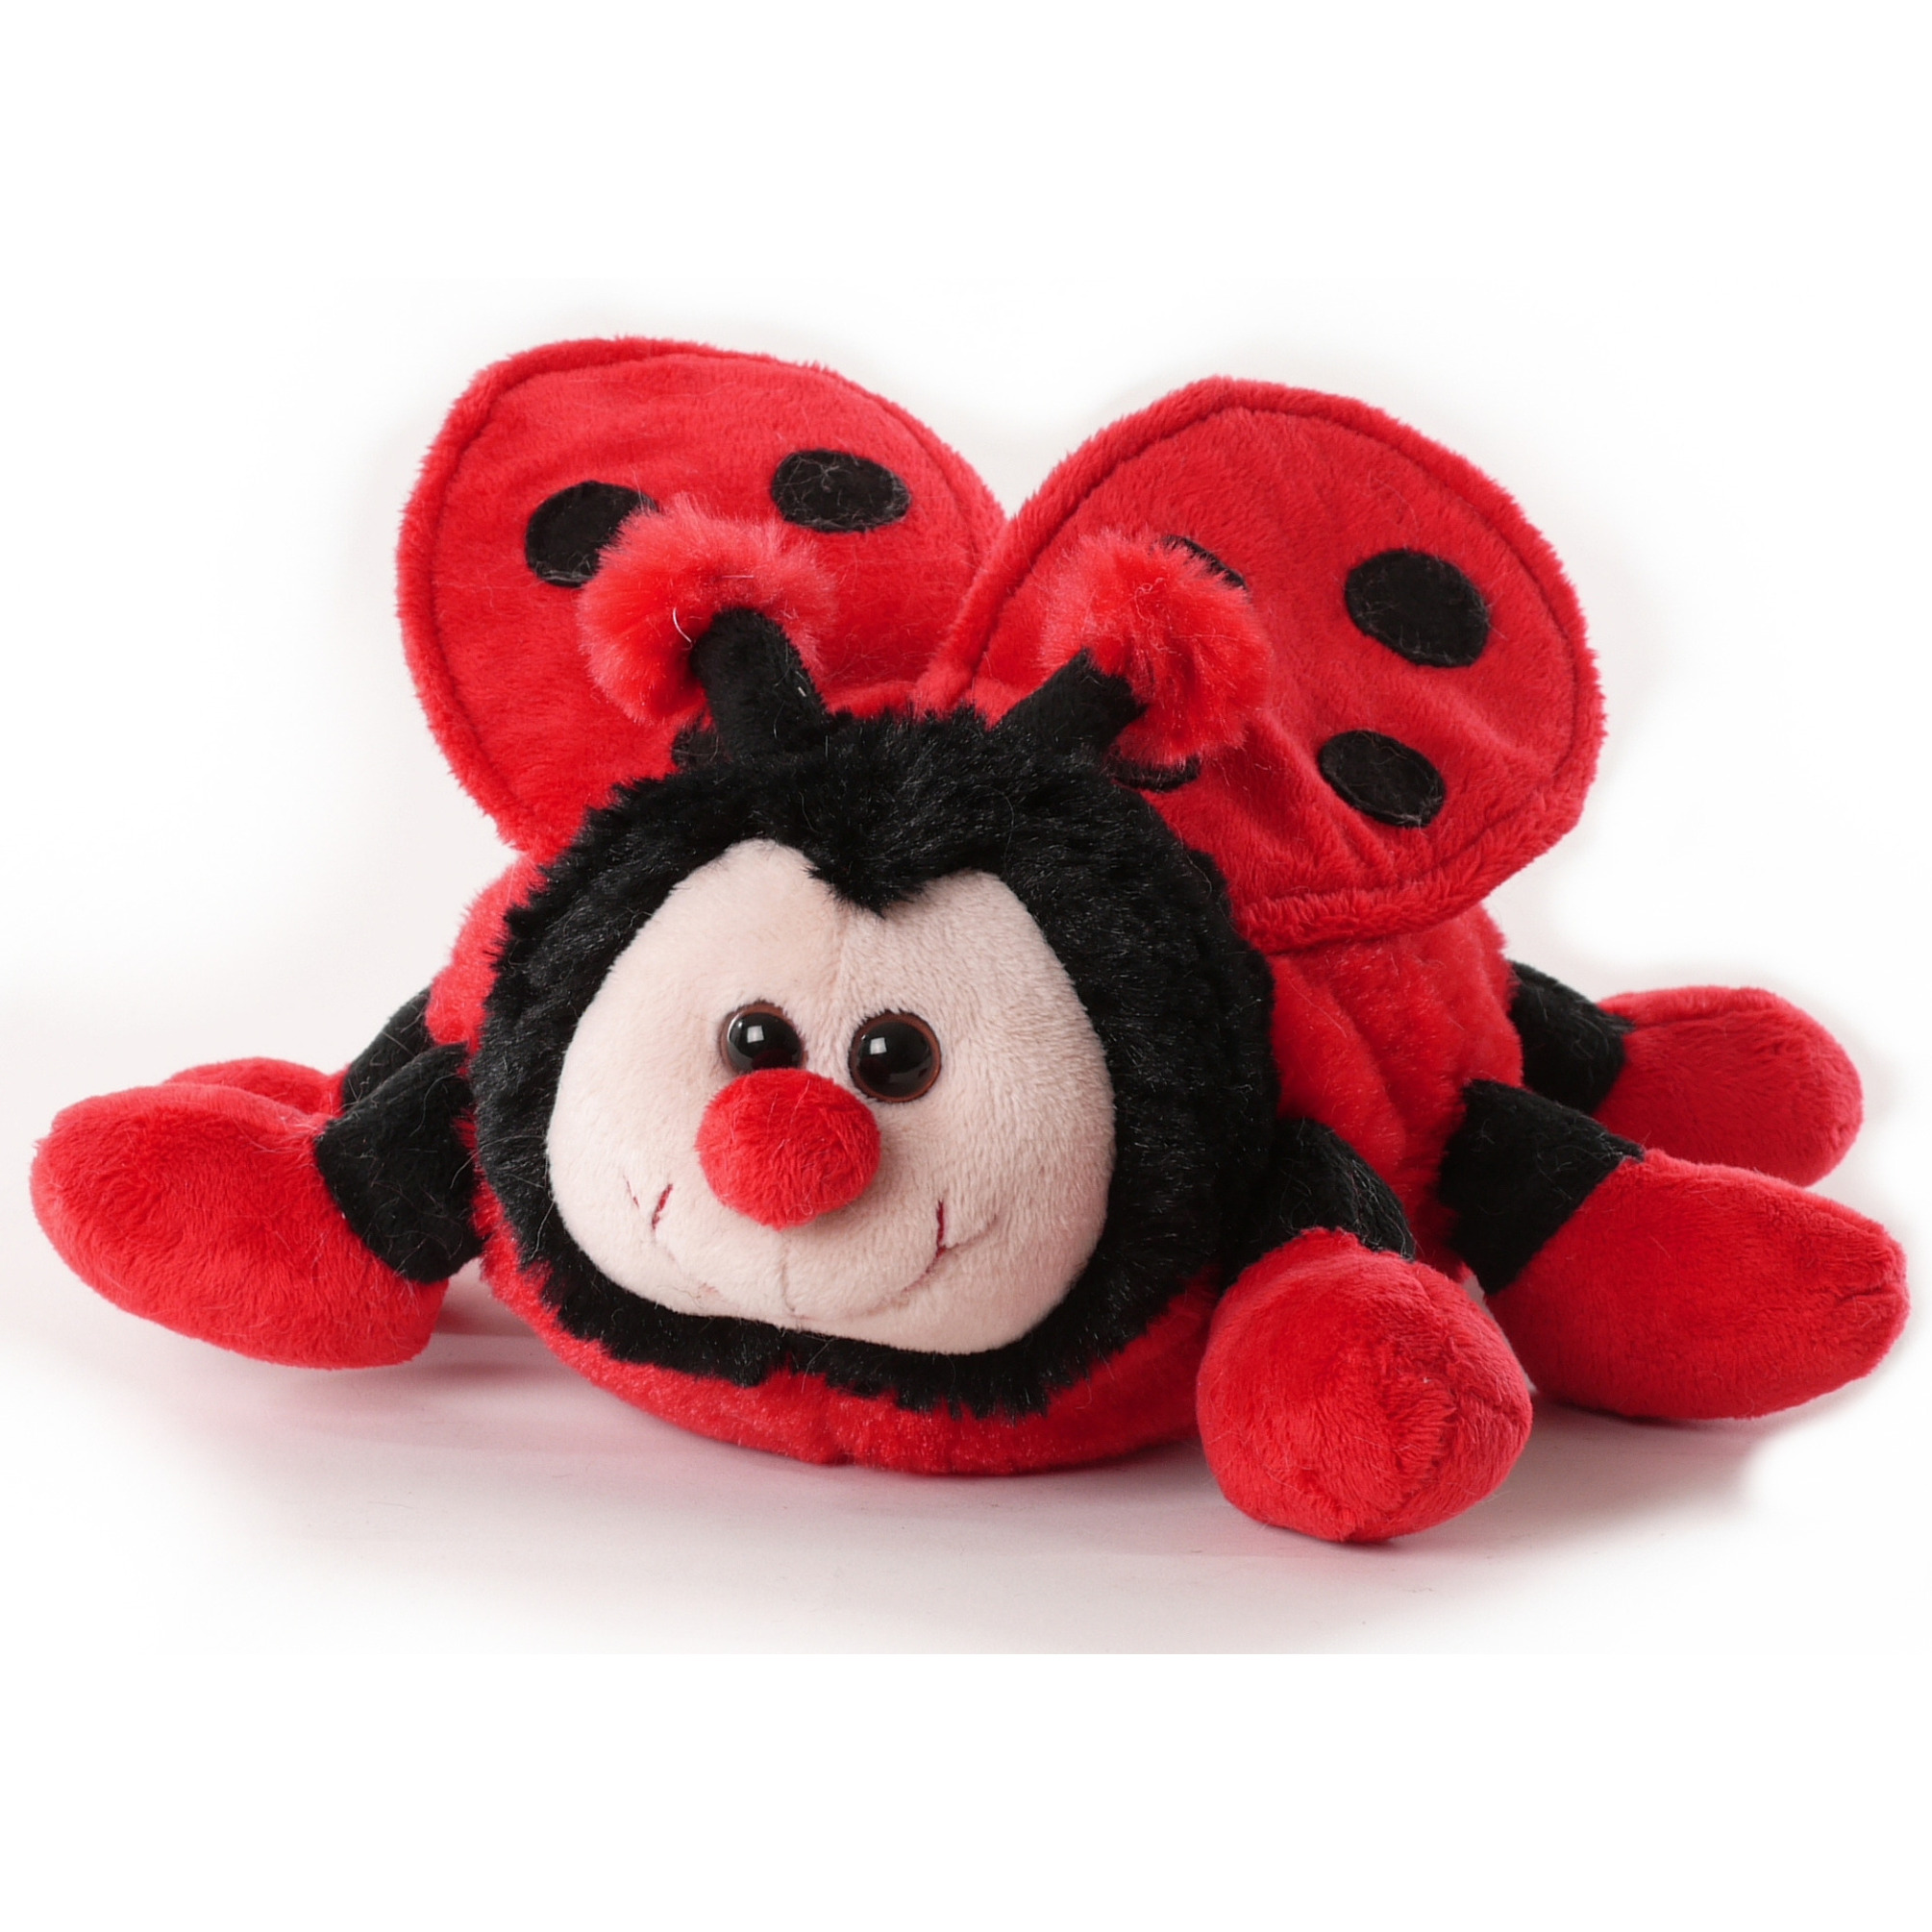 Inware pluche lieveheersbeestje knuffeldier - rood/zwart - staand - 20 cm